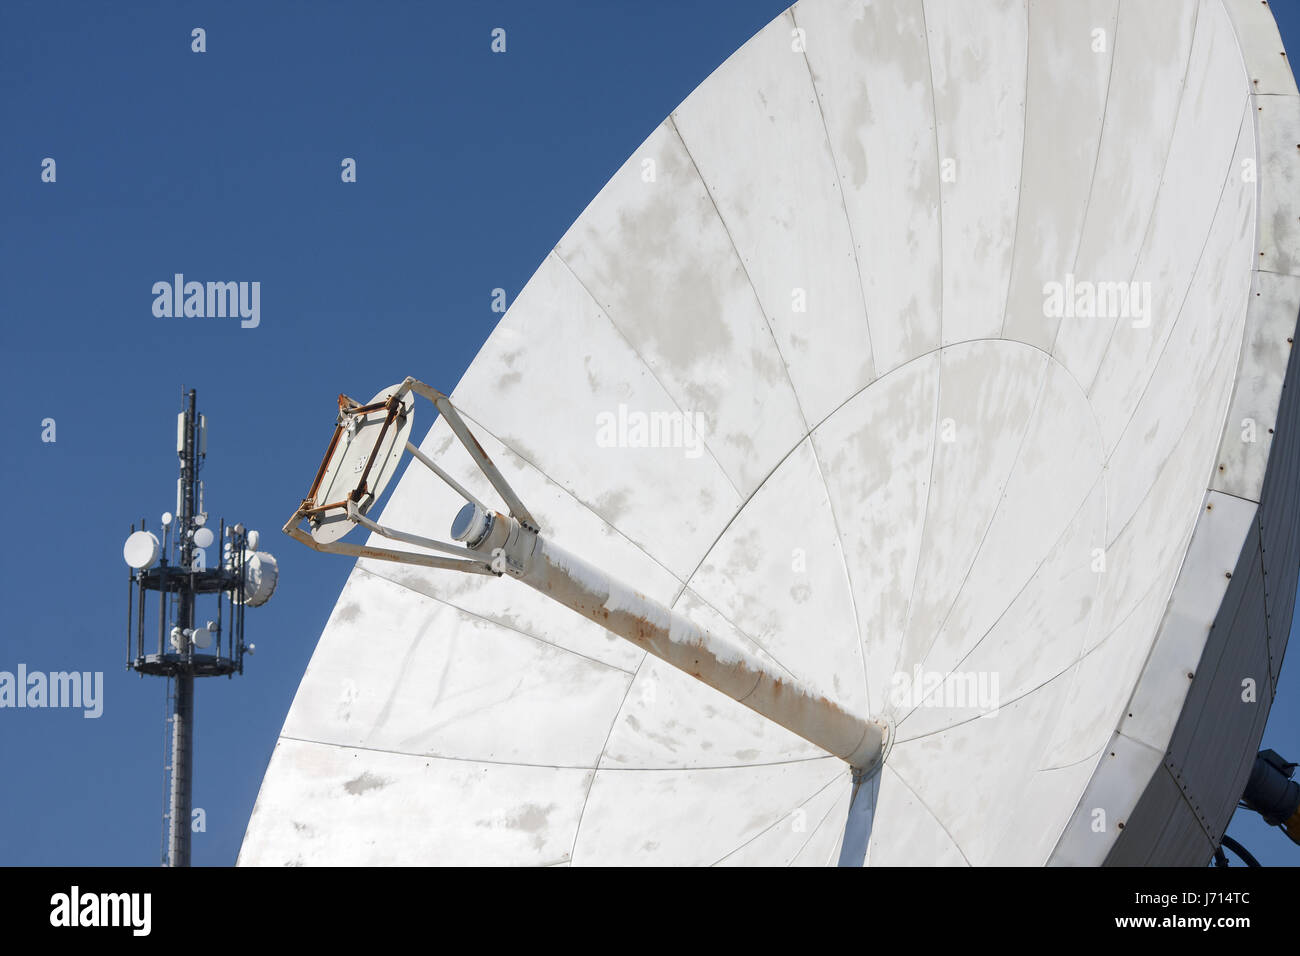 Reflektor Radar Parabel Parabolantenne Radio Relay System Funkgerät Stockfoto